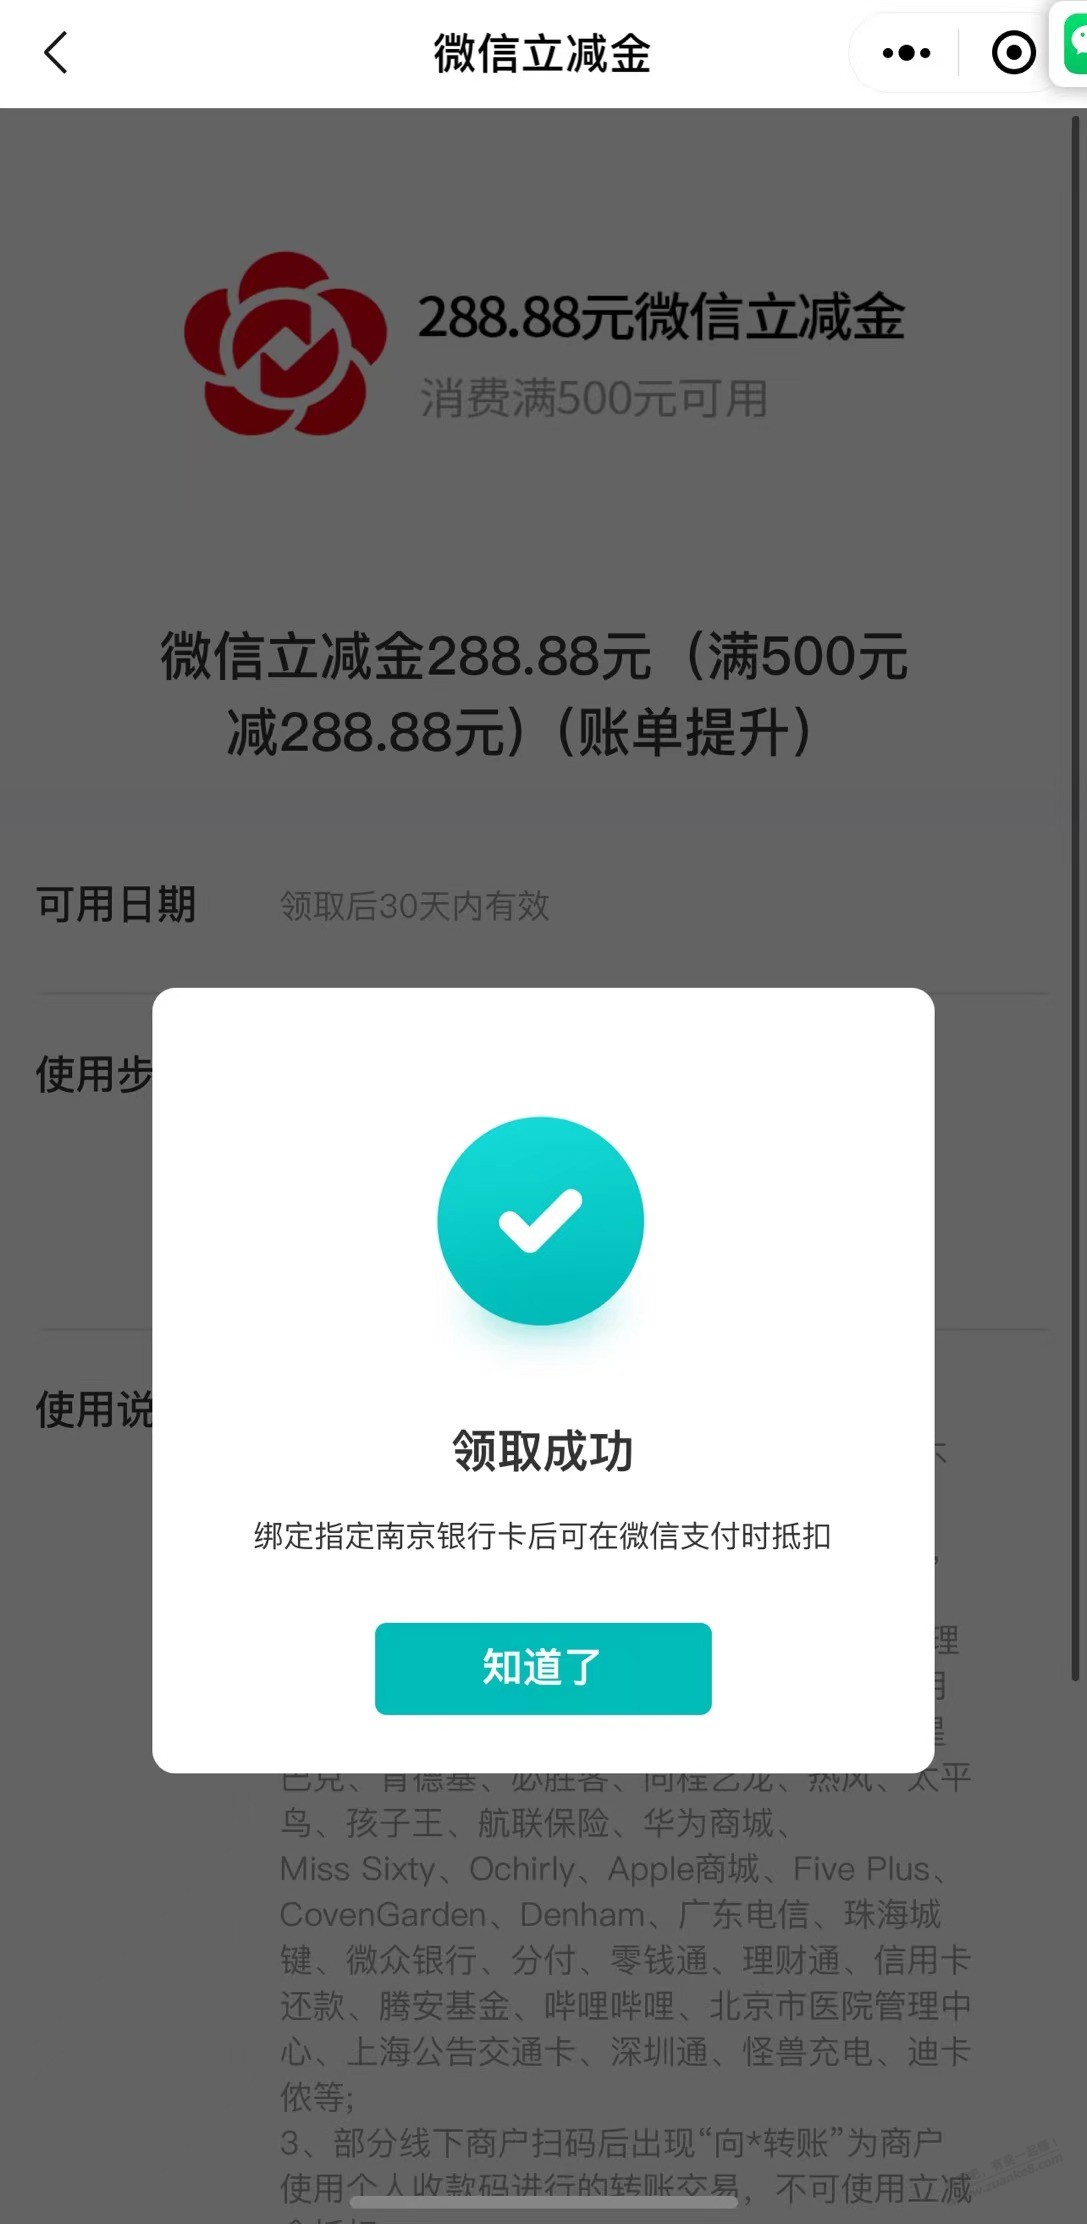 南京银行XYK账单提升-奖品到账了